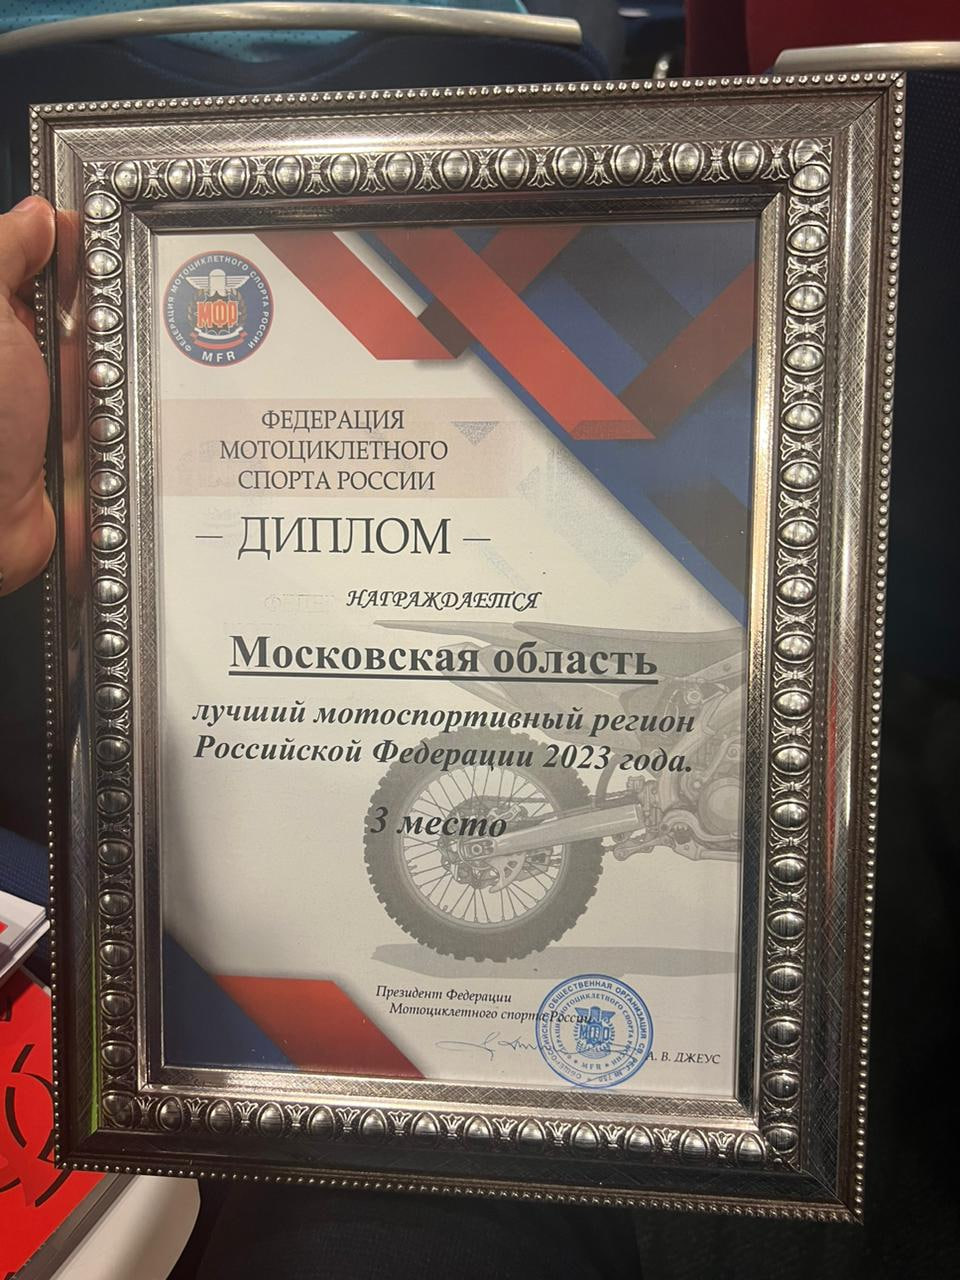 фото: Федерация мотоциклетного спорта Московской области заняла почетное 3-е место в конкурсе мотоспортивных регионов России